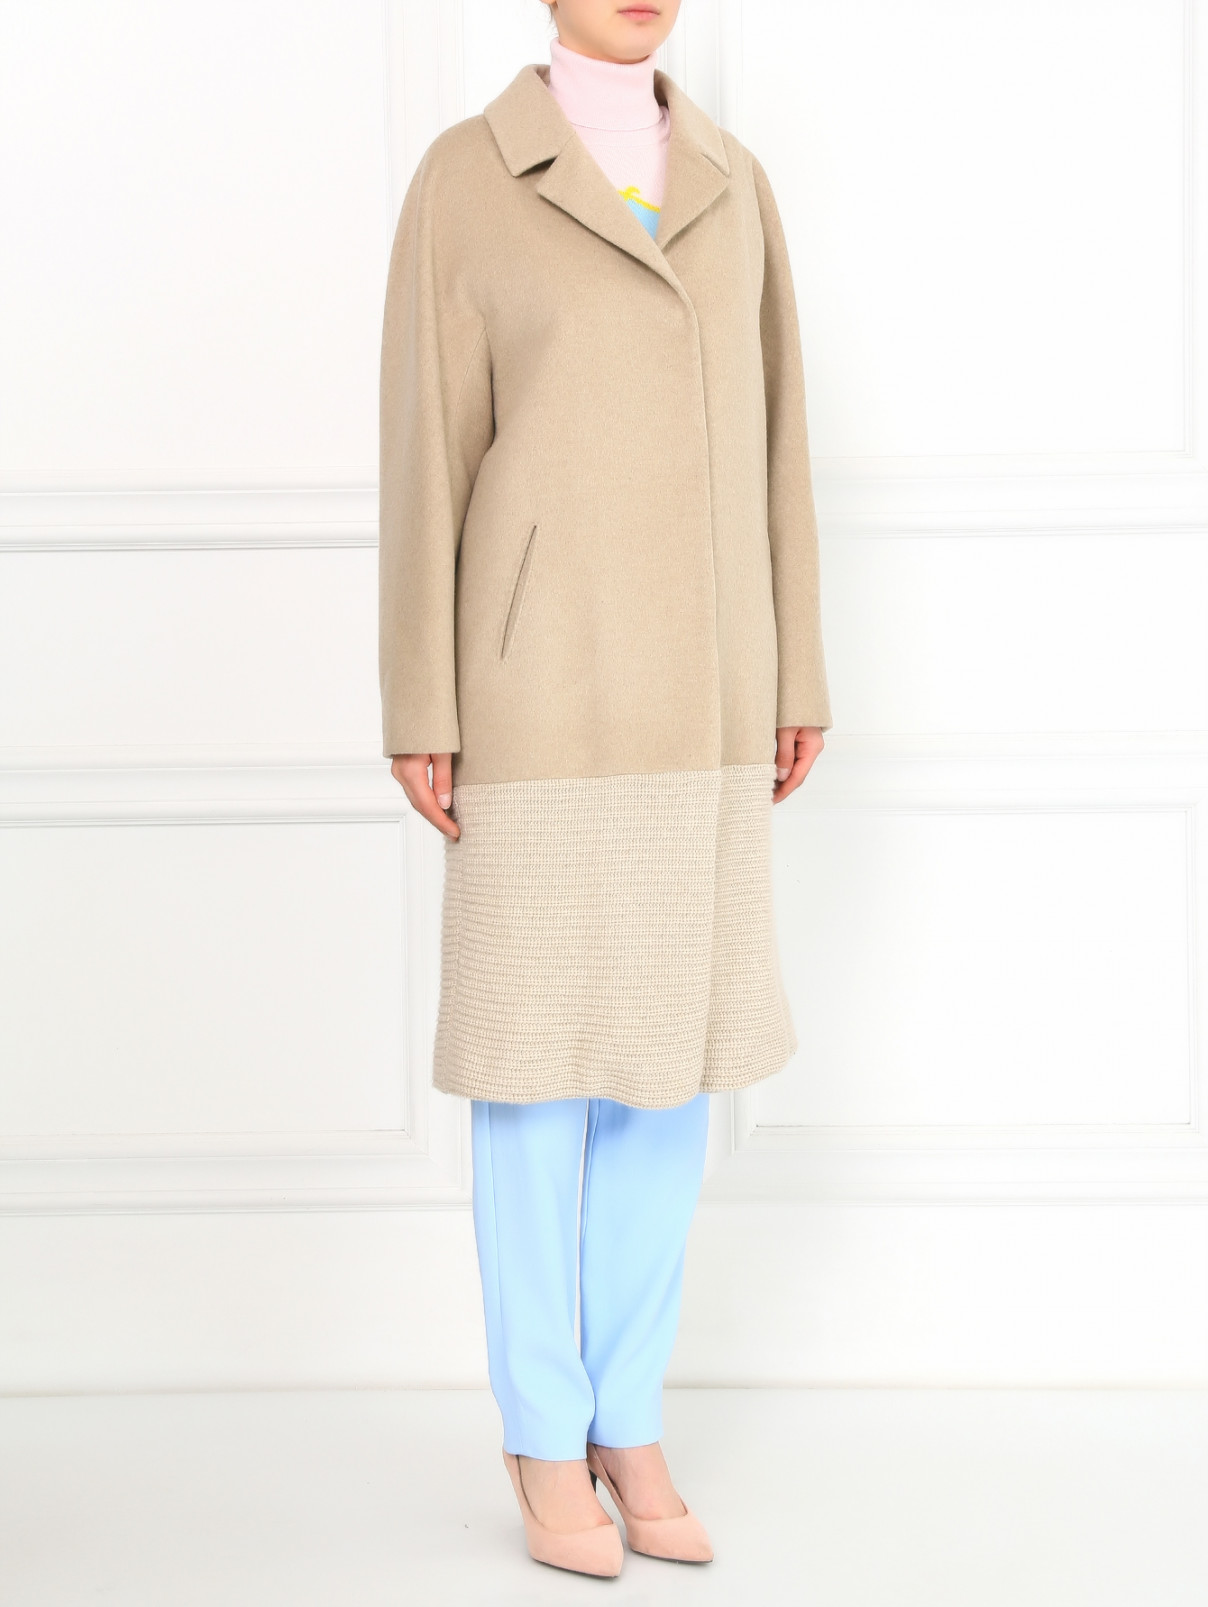 Пальто из шерсти с трикотажной вставкой на подоле Ballantyne  –  Модель Общий вид  – Цвет:  Бежевый